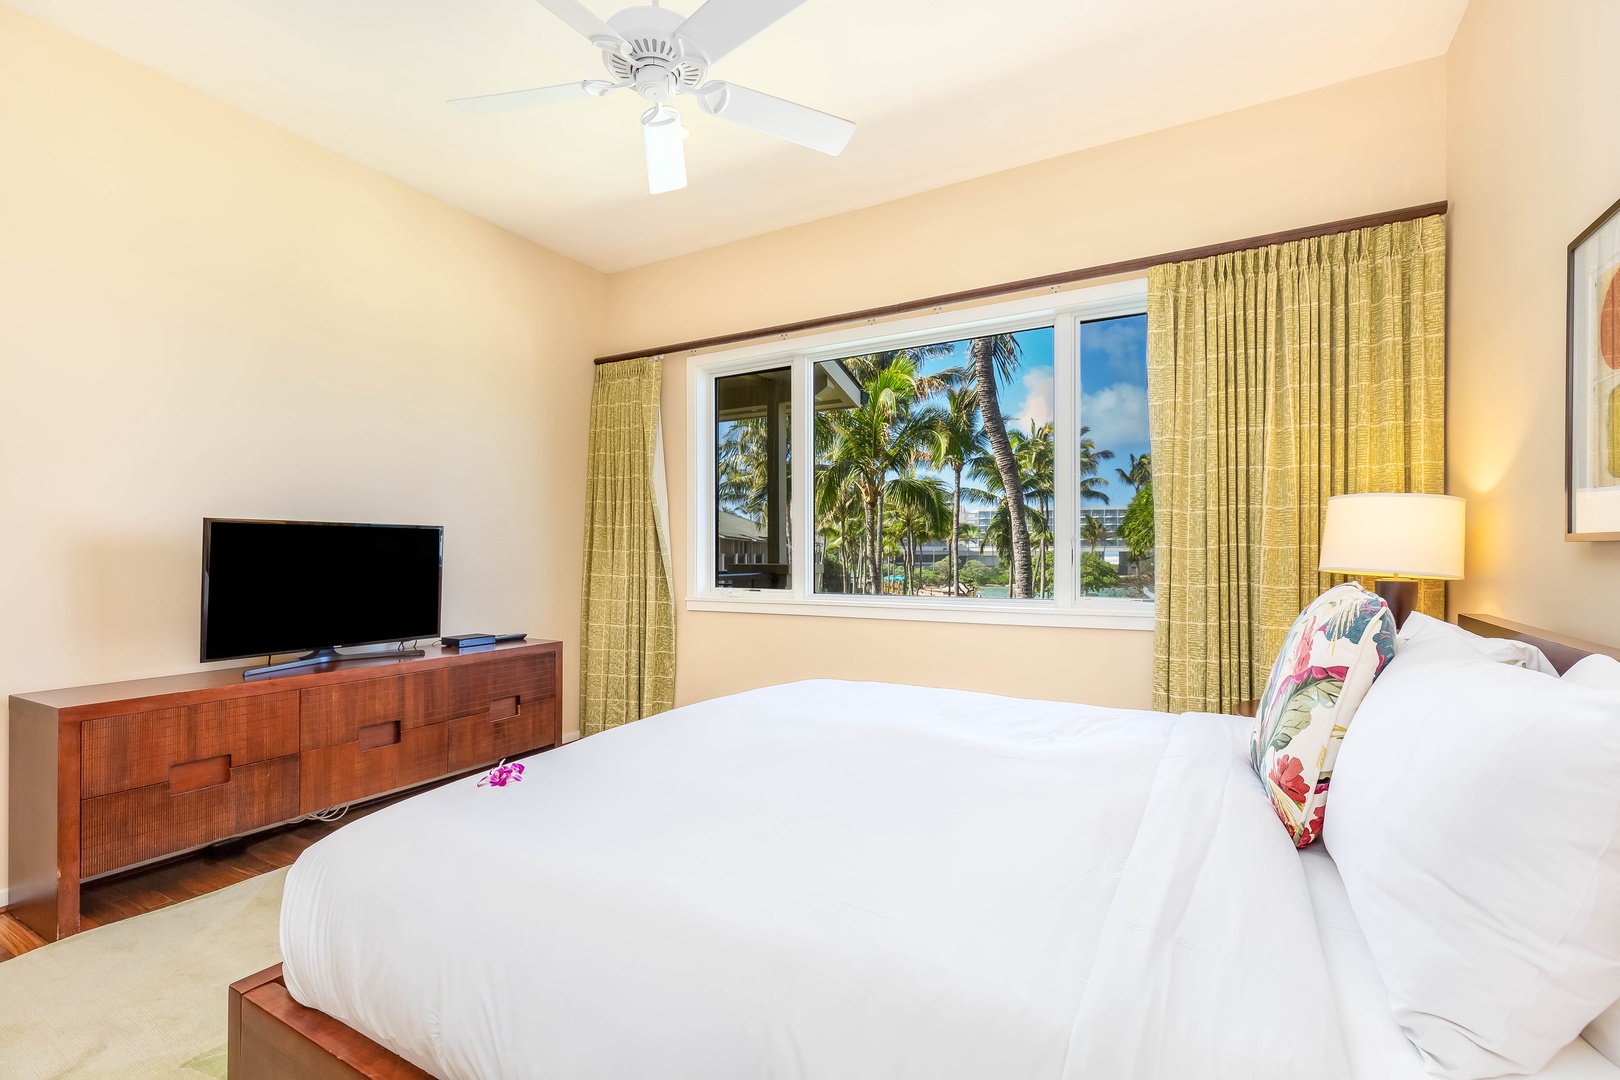 Kahuku Vacation Rentals, Turtle Bay Villas 311 - Each bedroom has a tv